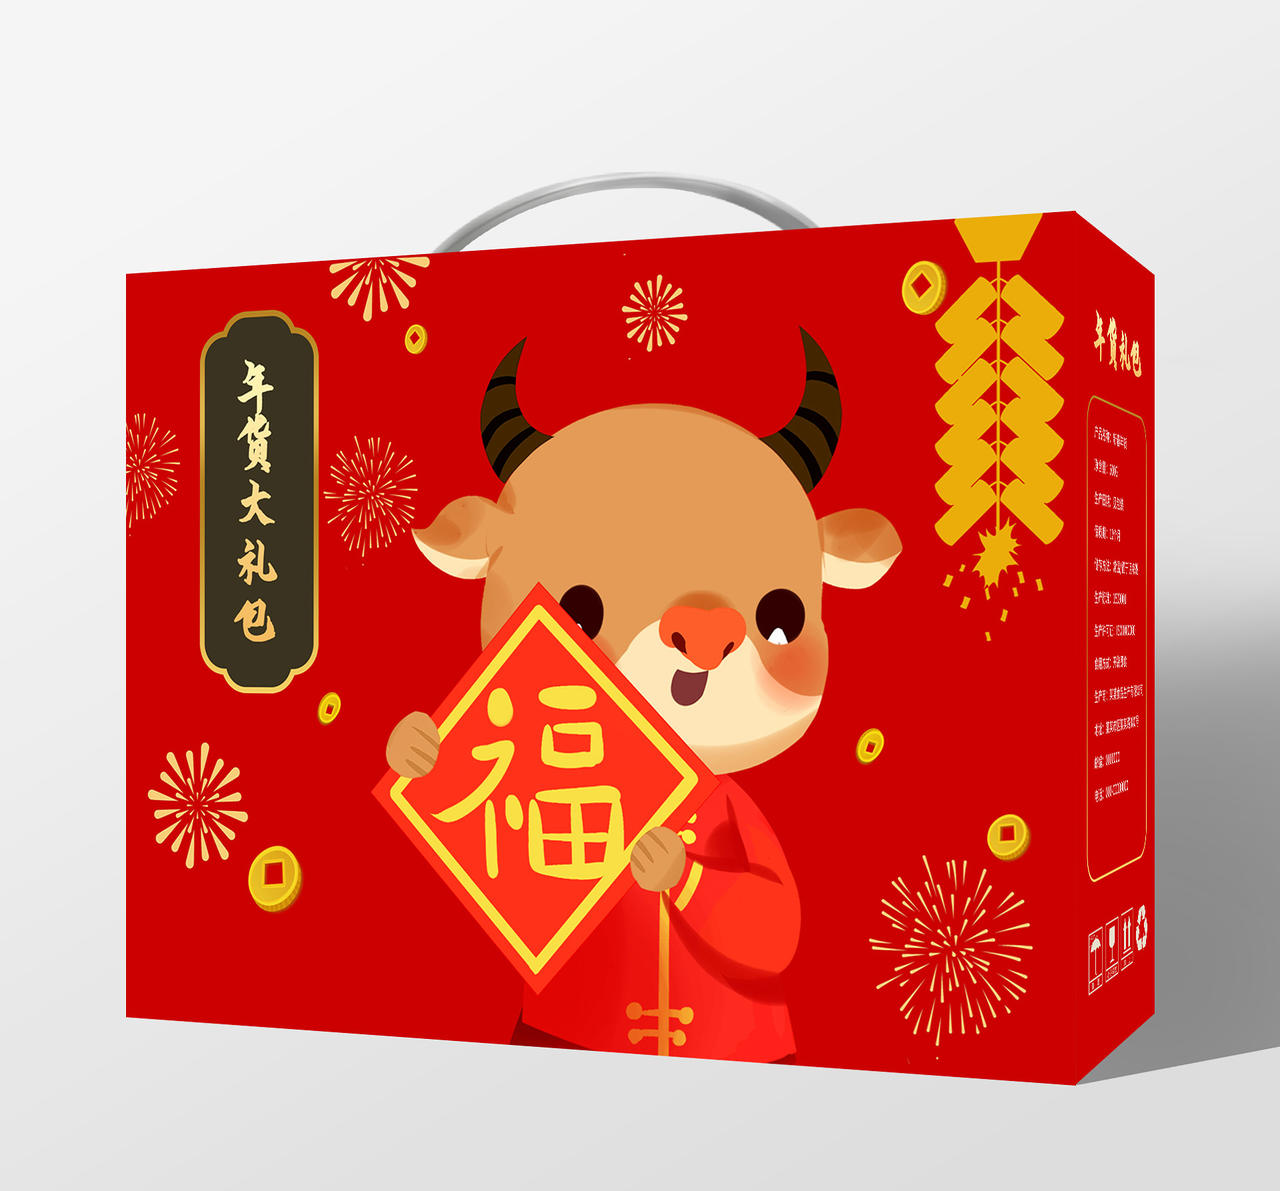 红色喜庆卡通风格年货大礼包春节包装盒礼盒手提盒设计2021年货节